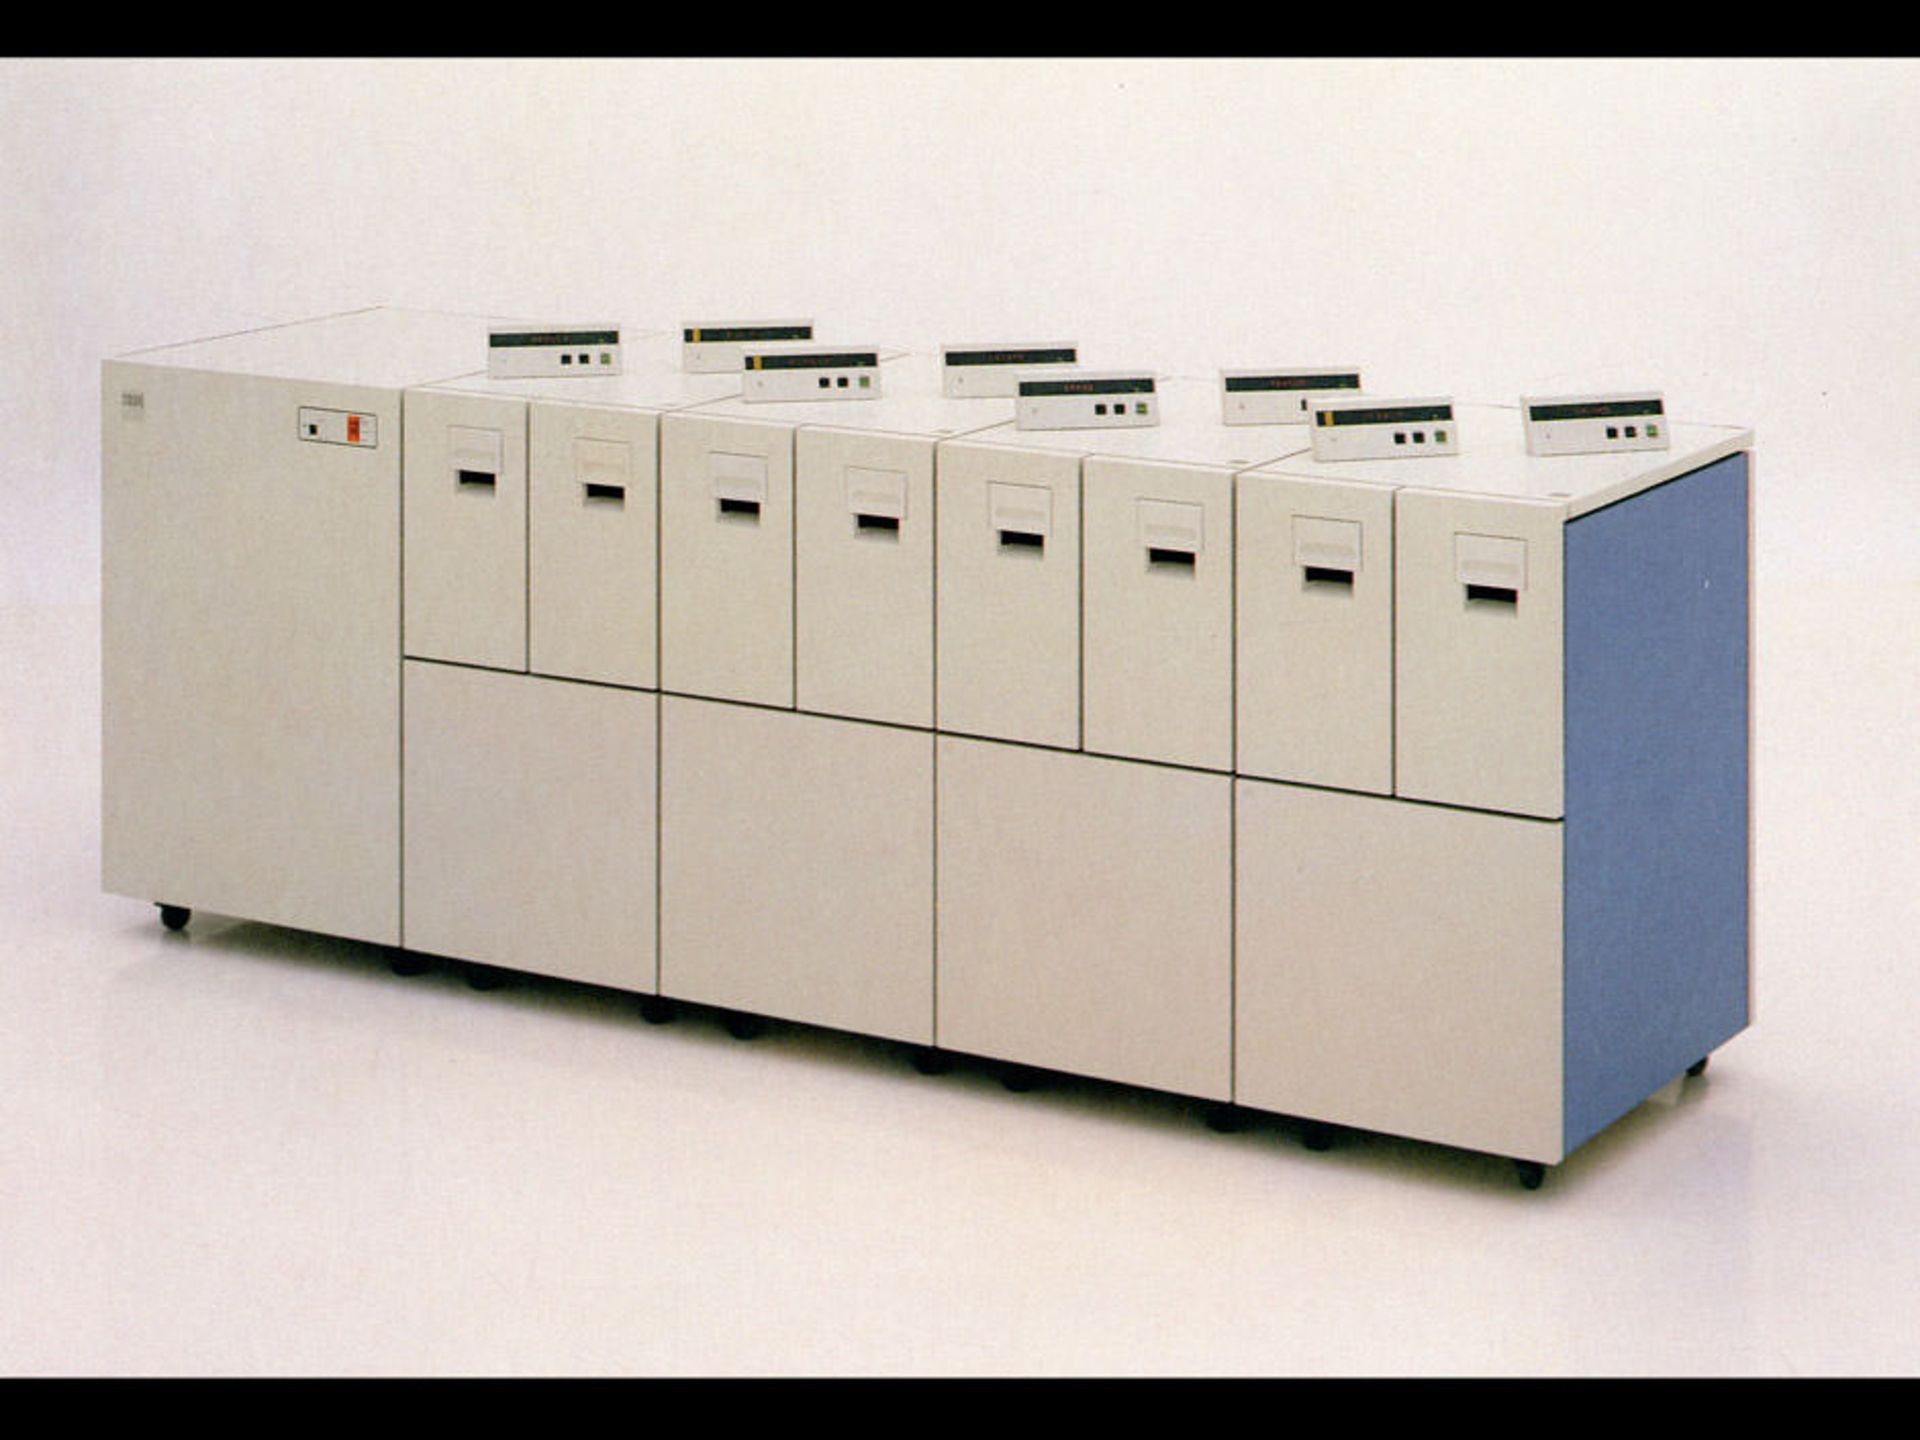 ۱۹۸۴: معرفی فناوری هدفیلم باریک (IBM 3480) و کاتریج ۴ در ۵